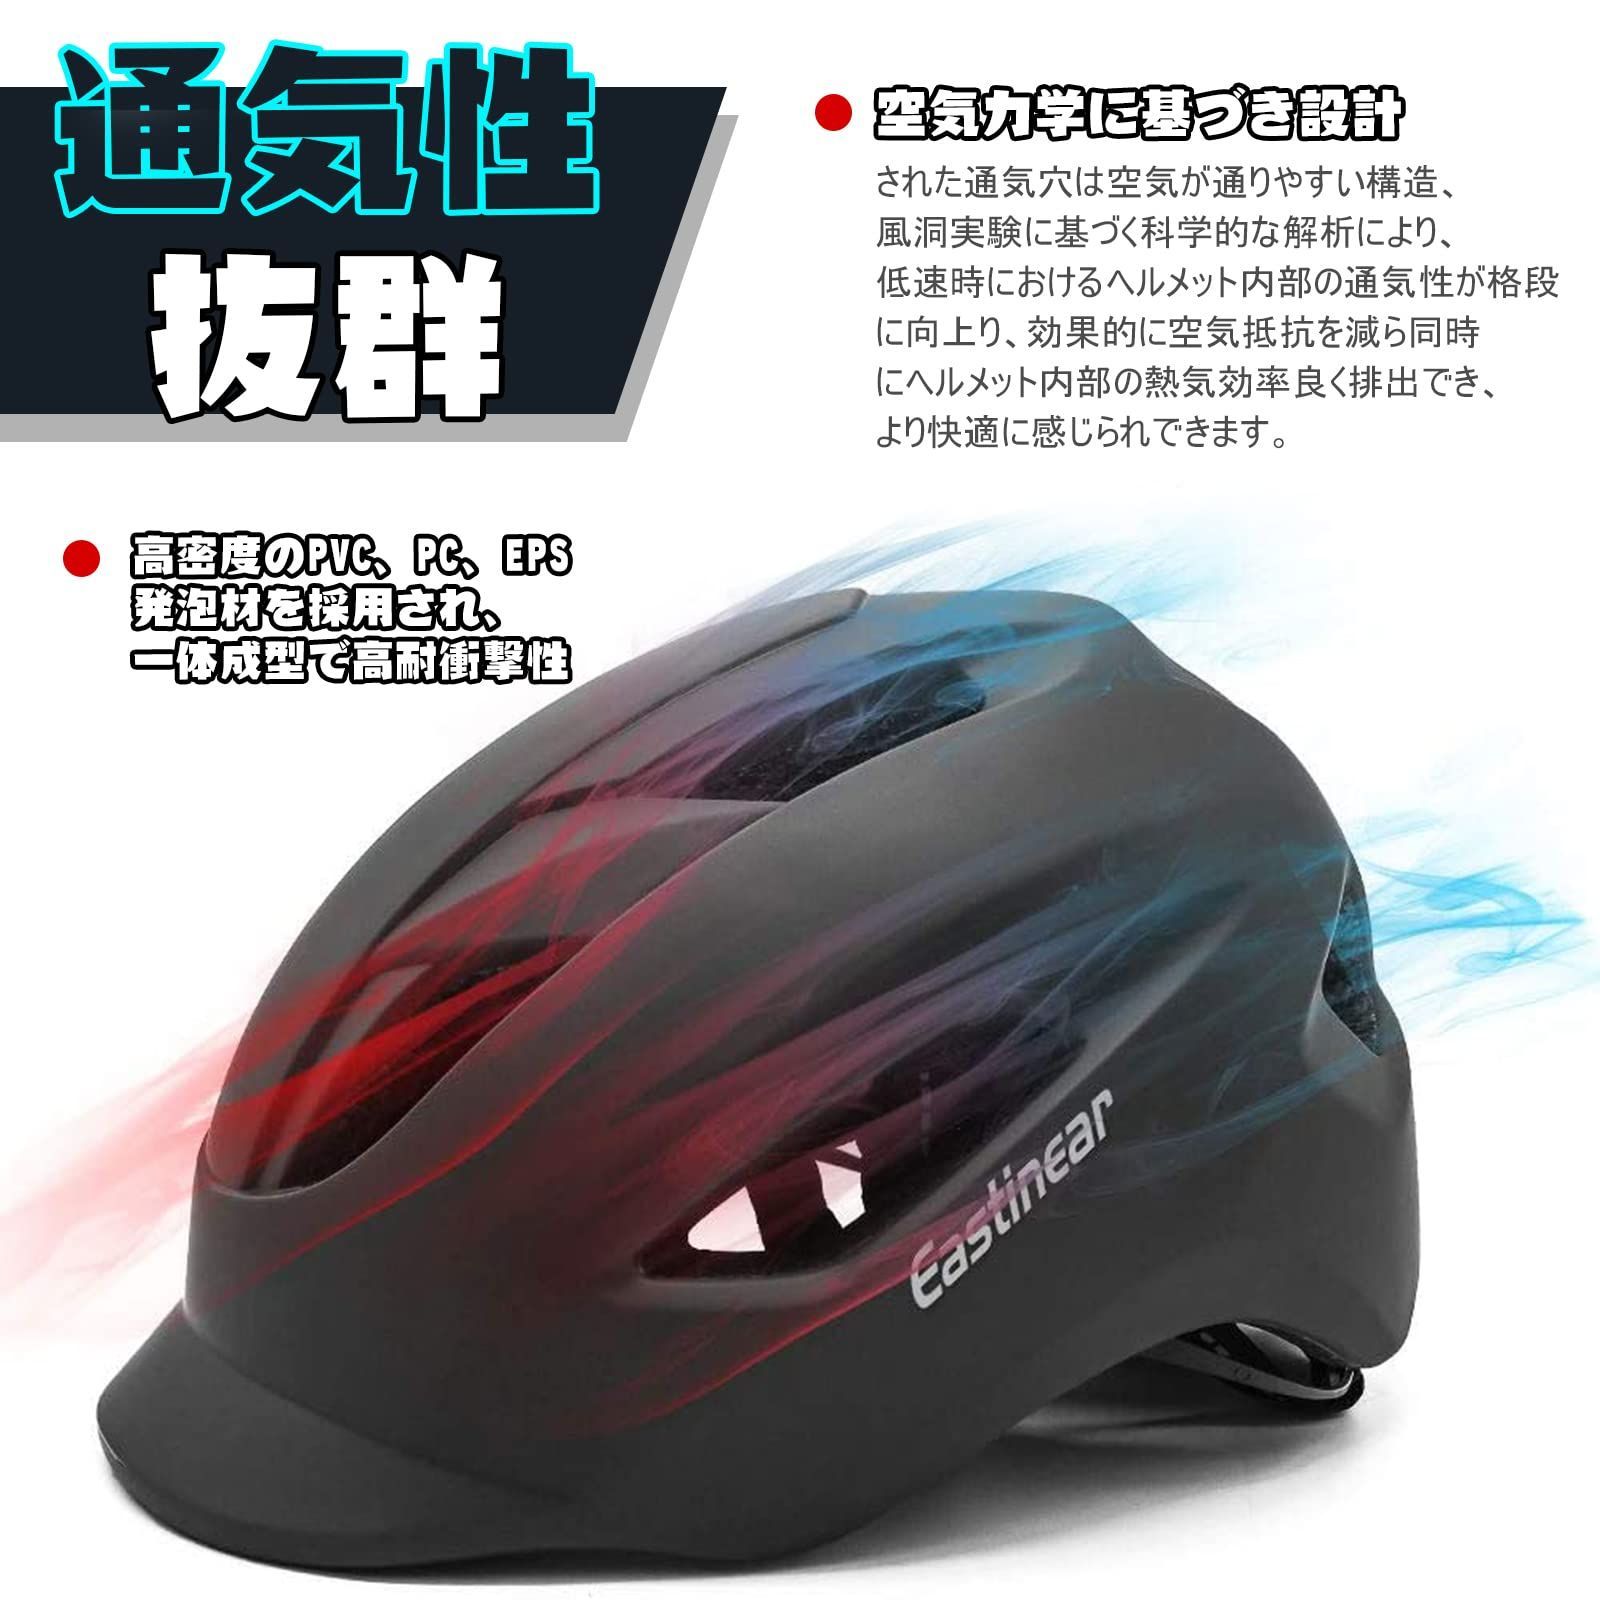 数量限定セール 自転車ヘルメット 大人用 高剛性 耐衝撃 CE安全基準認証 57-62cm